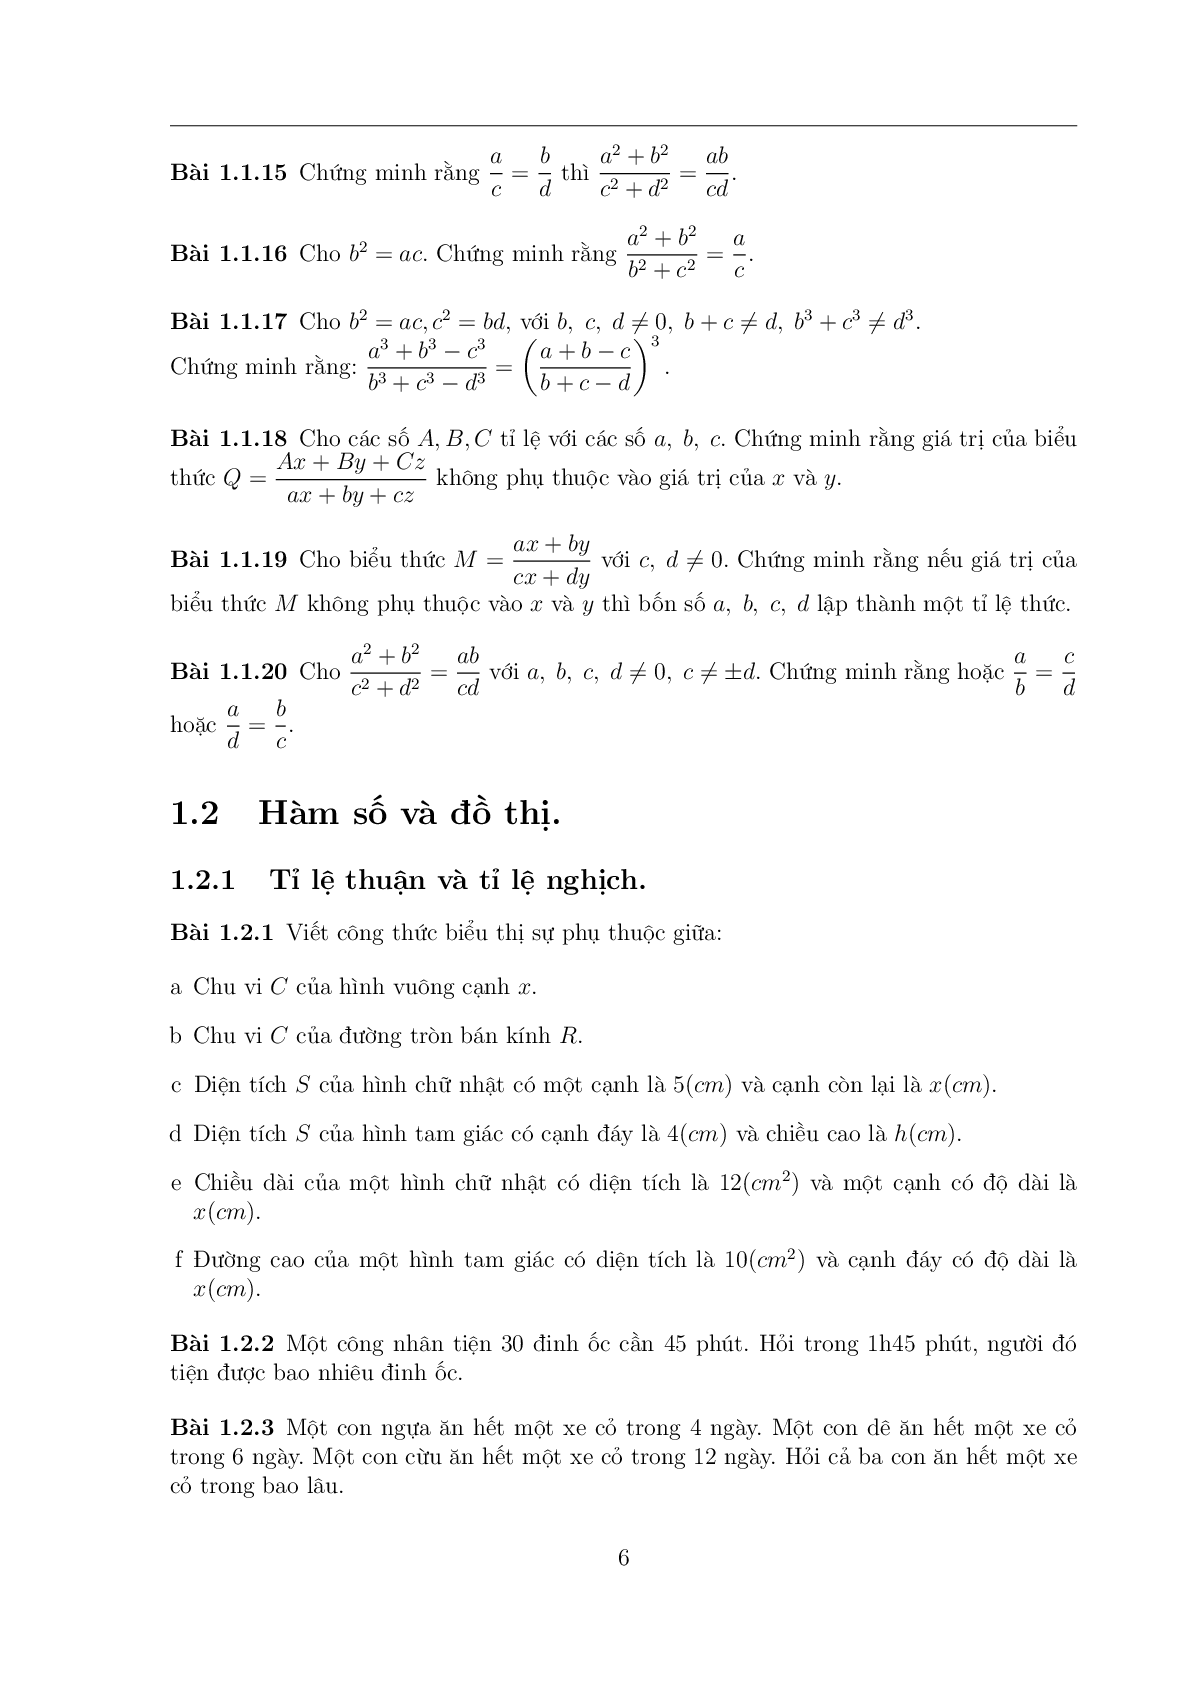 108 Bài toán chọn lọc Toán 7 có đáp án (trang 5)